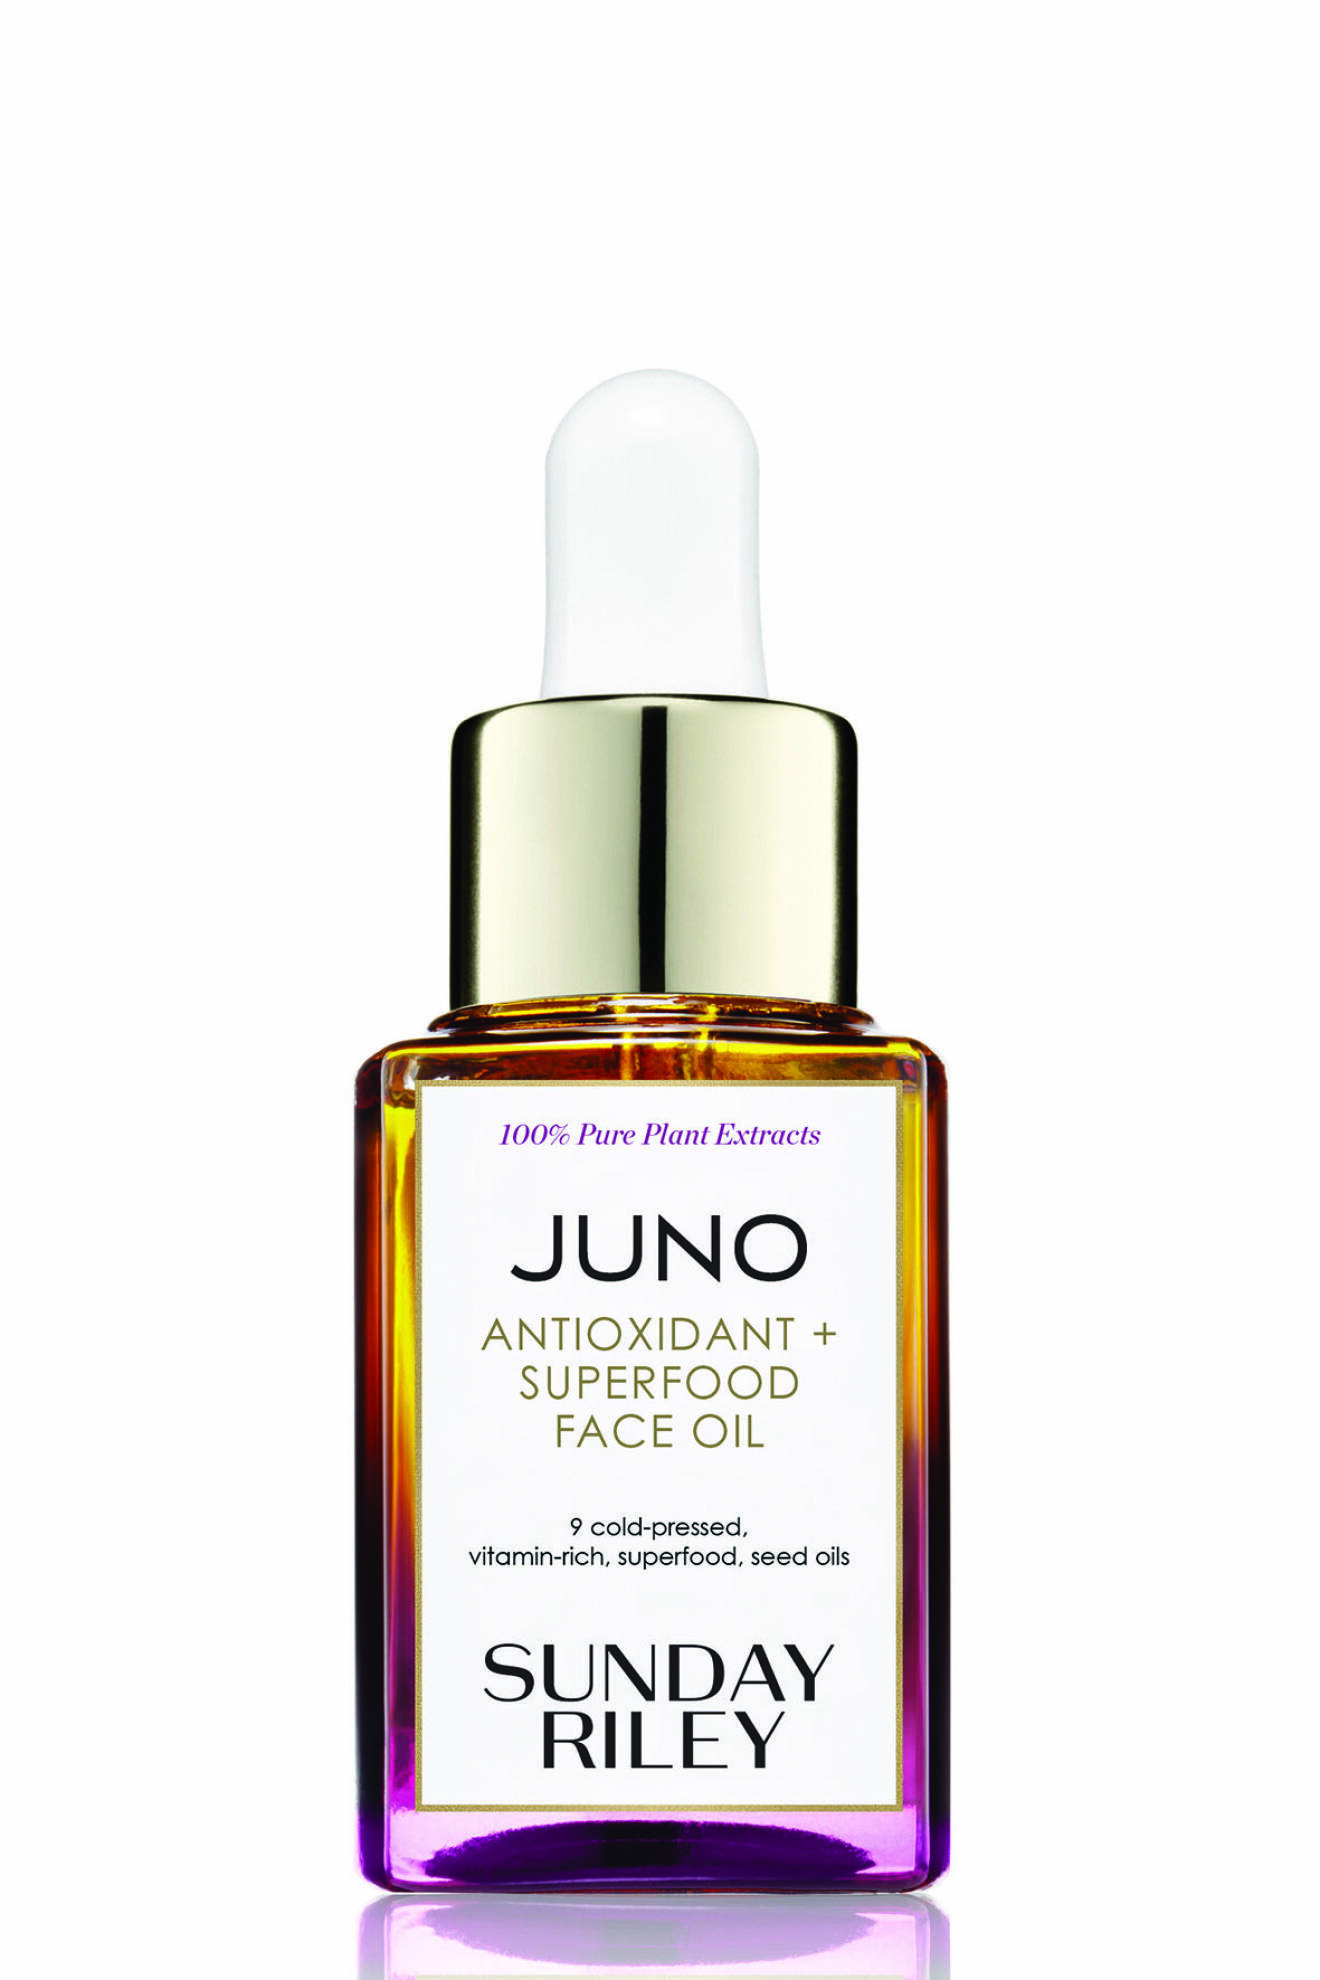 Juno Antioxidant + Superfood Face Oil från Sunday Riley ger omedelbar lyster.